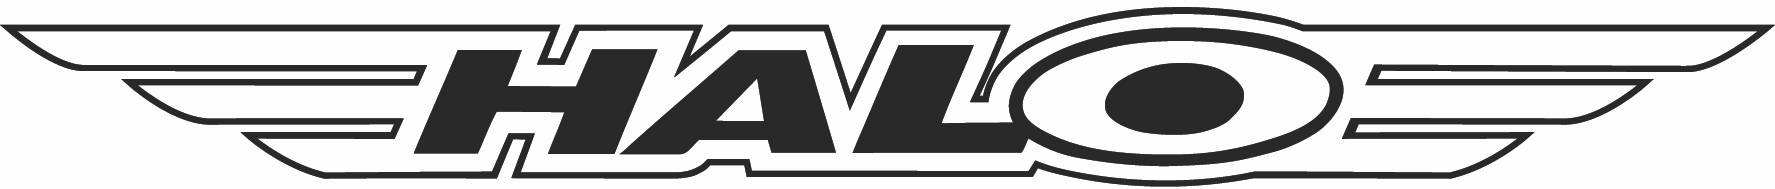 halo techwings logo k 1